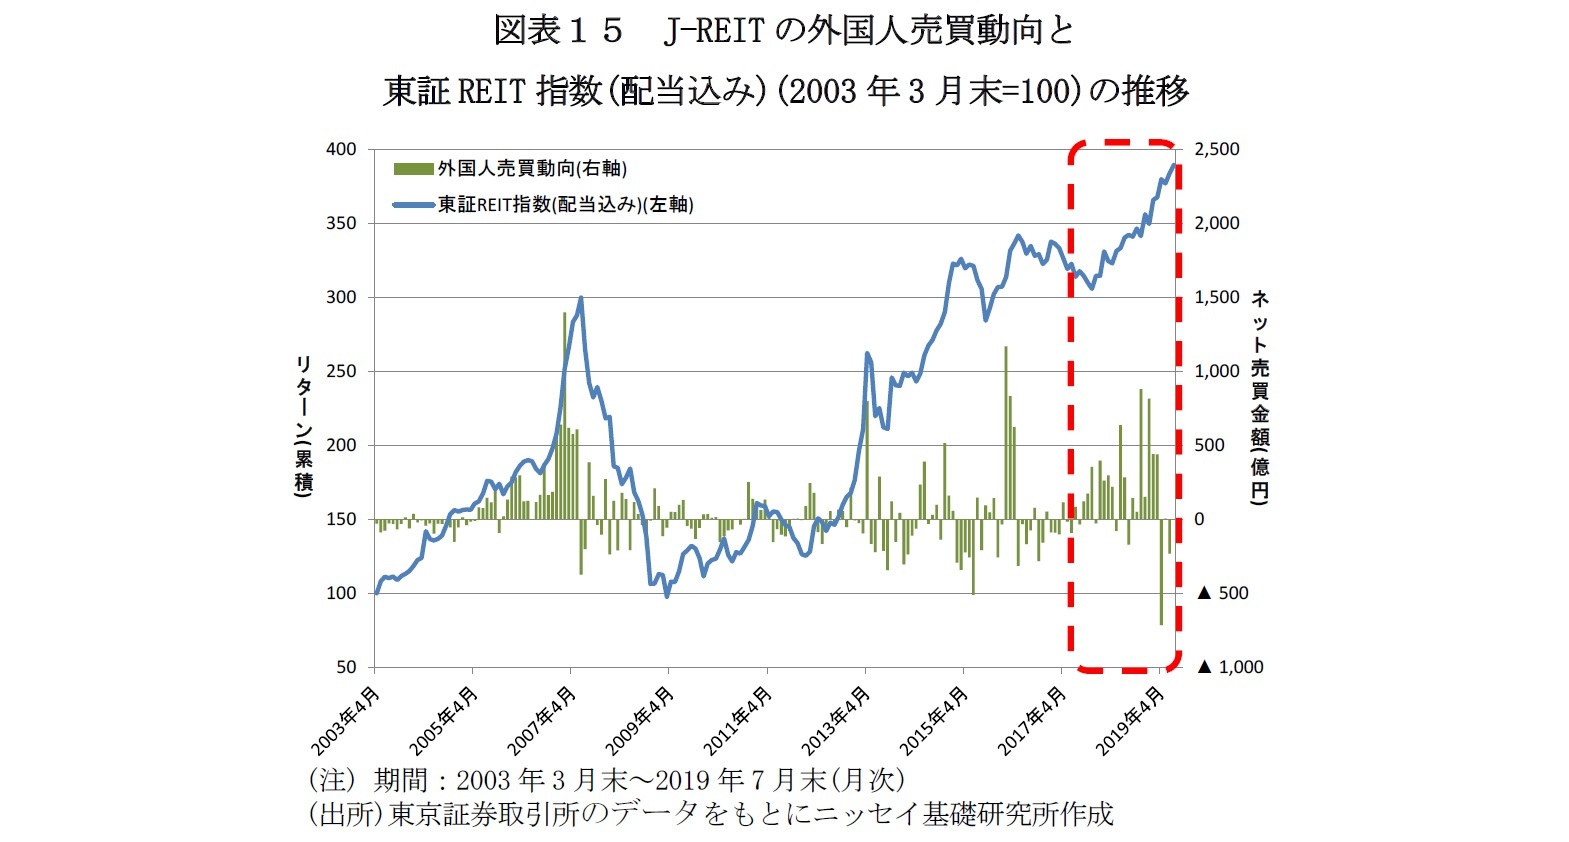 図表１５　J-REITの外国人売買動向と東証REIT指数(配当込み)(2003年3月末=100)の推移